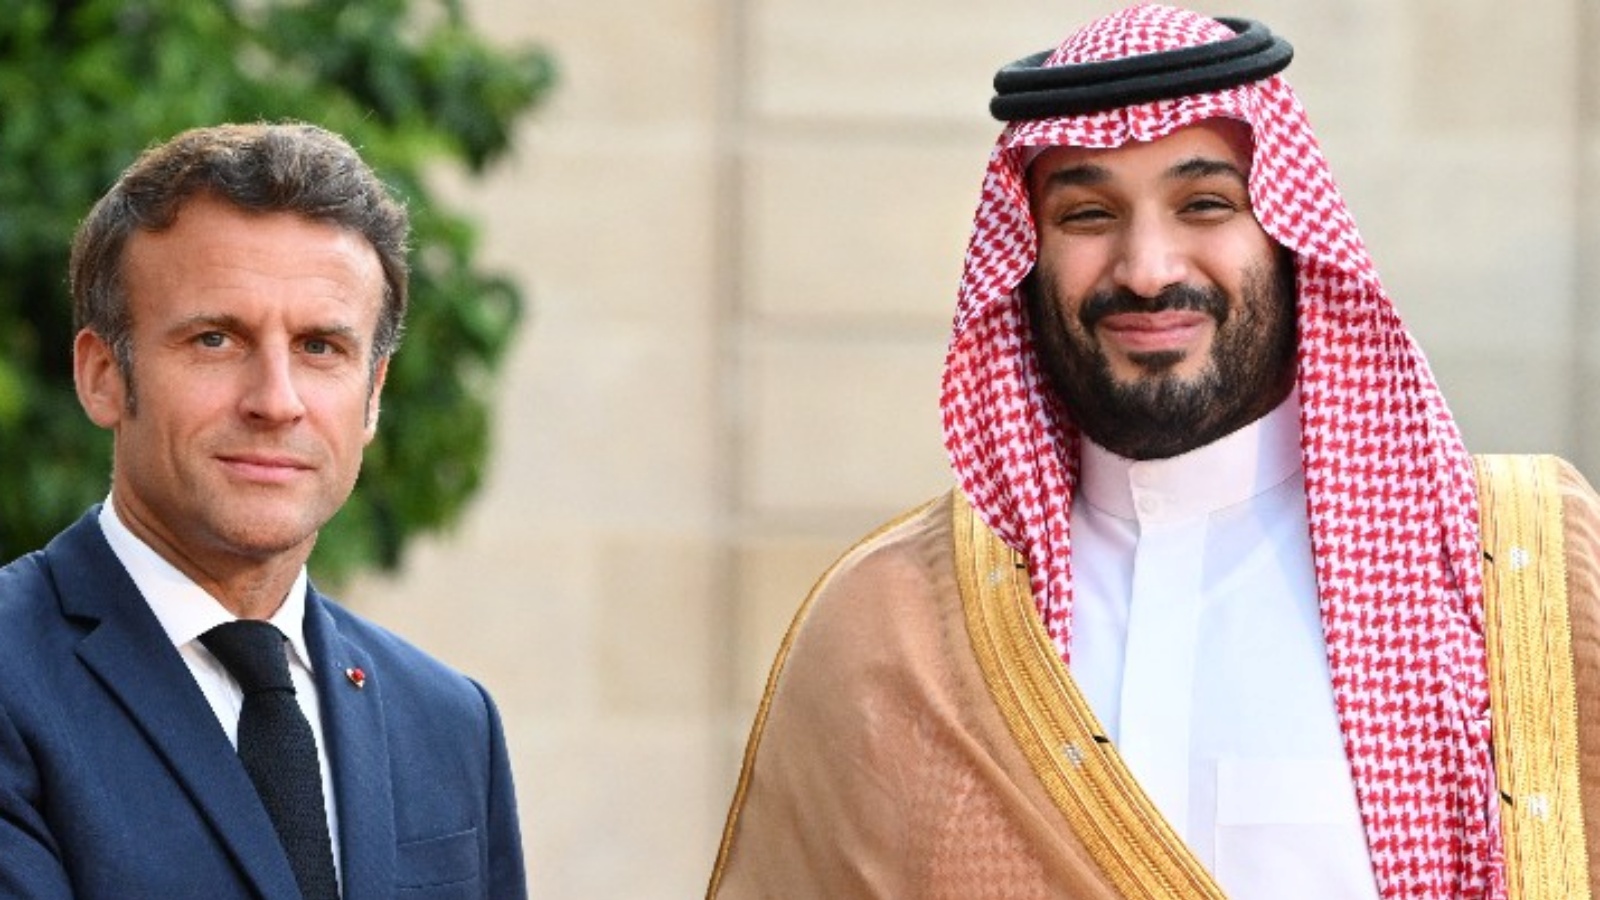 ولي العهد السعودي محمد بن سلمان والرئيس الفرنسي إيمانويل ماكرون (أرشيفية)